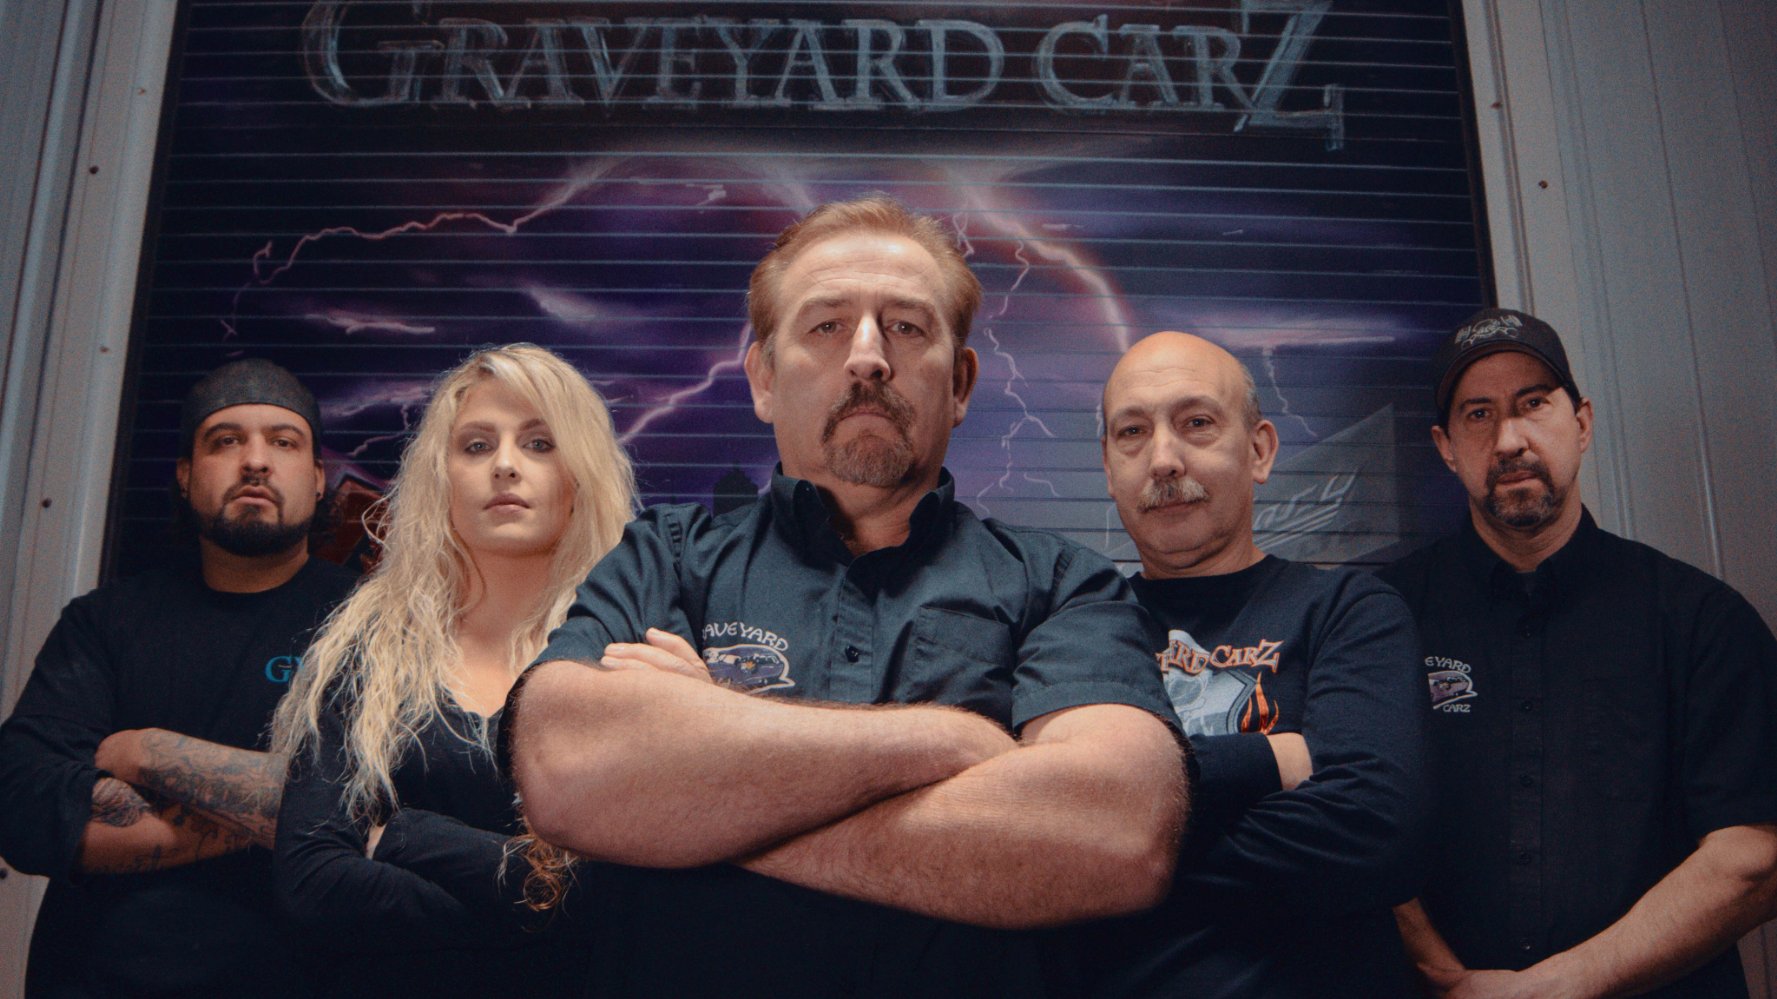 Graveyard Carz - Season 6